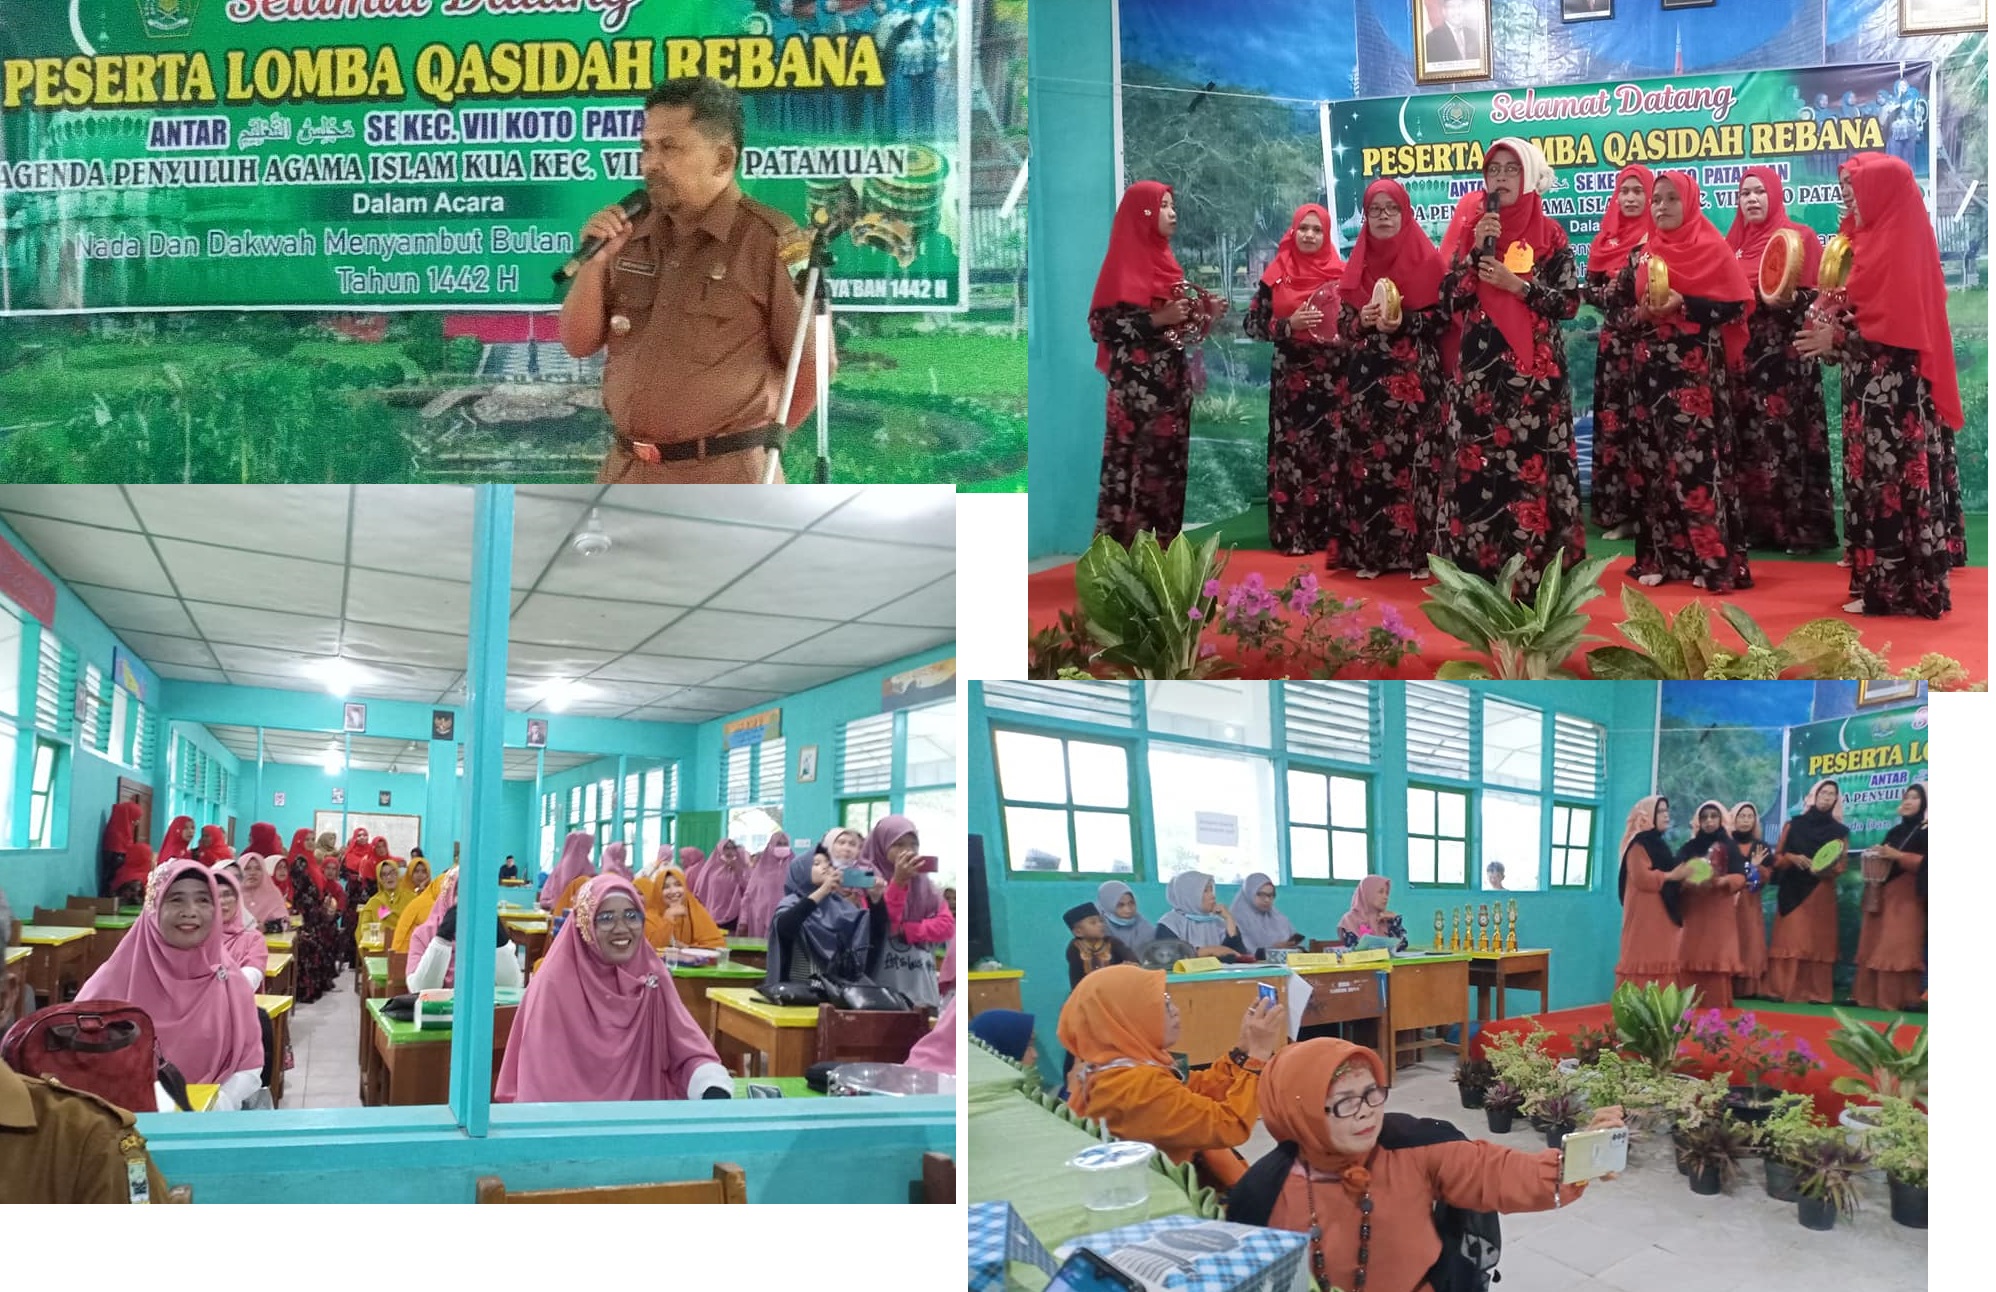 Pembukaan Lomba Qasidah Tingkat Kecamatan VII Koto Patamuan Kabupaten Padang Pariaman